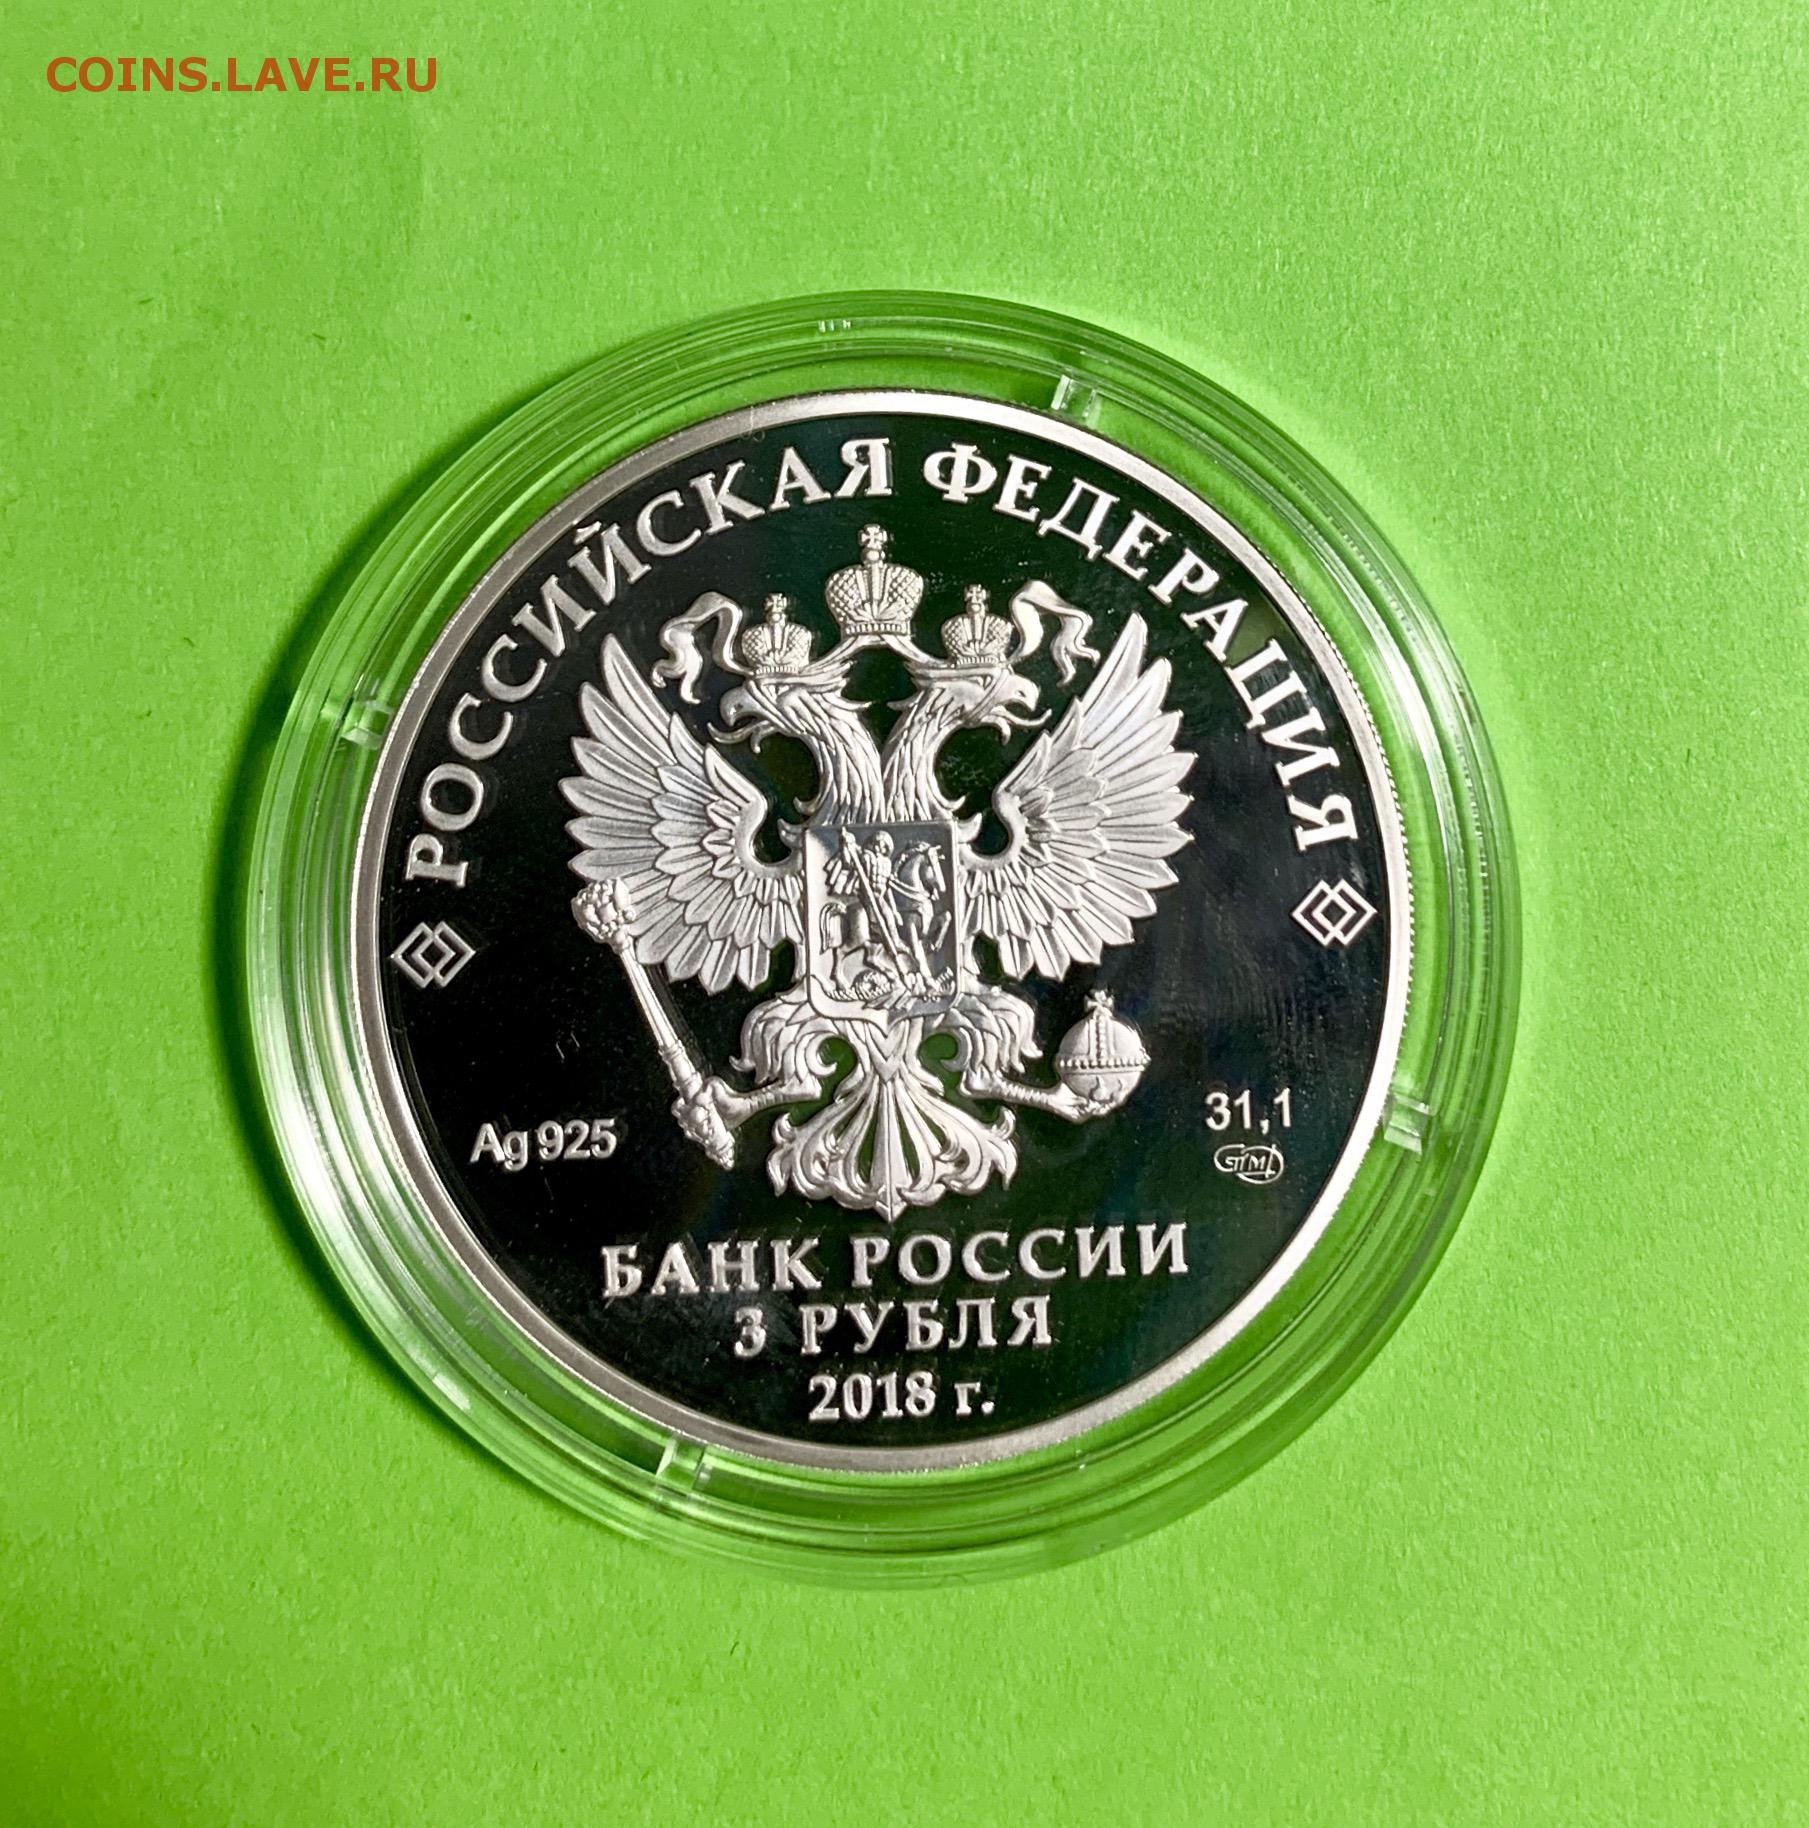 Выпуск 3 рубля. 3 Рубля на страже Отечества. 3 Рубля серебро на страже Отечества набор. Отечество монета. 3 Рубля зеленые.